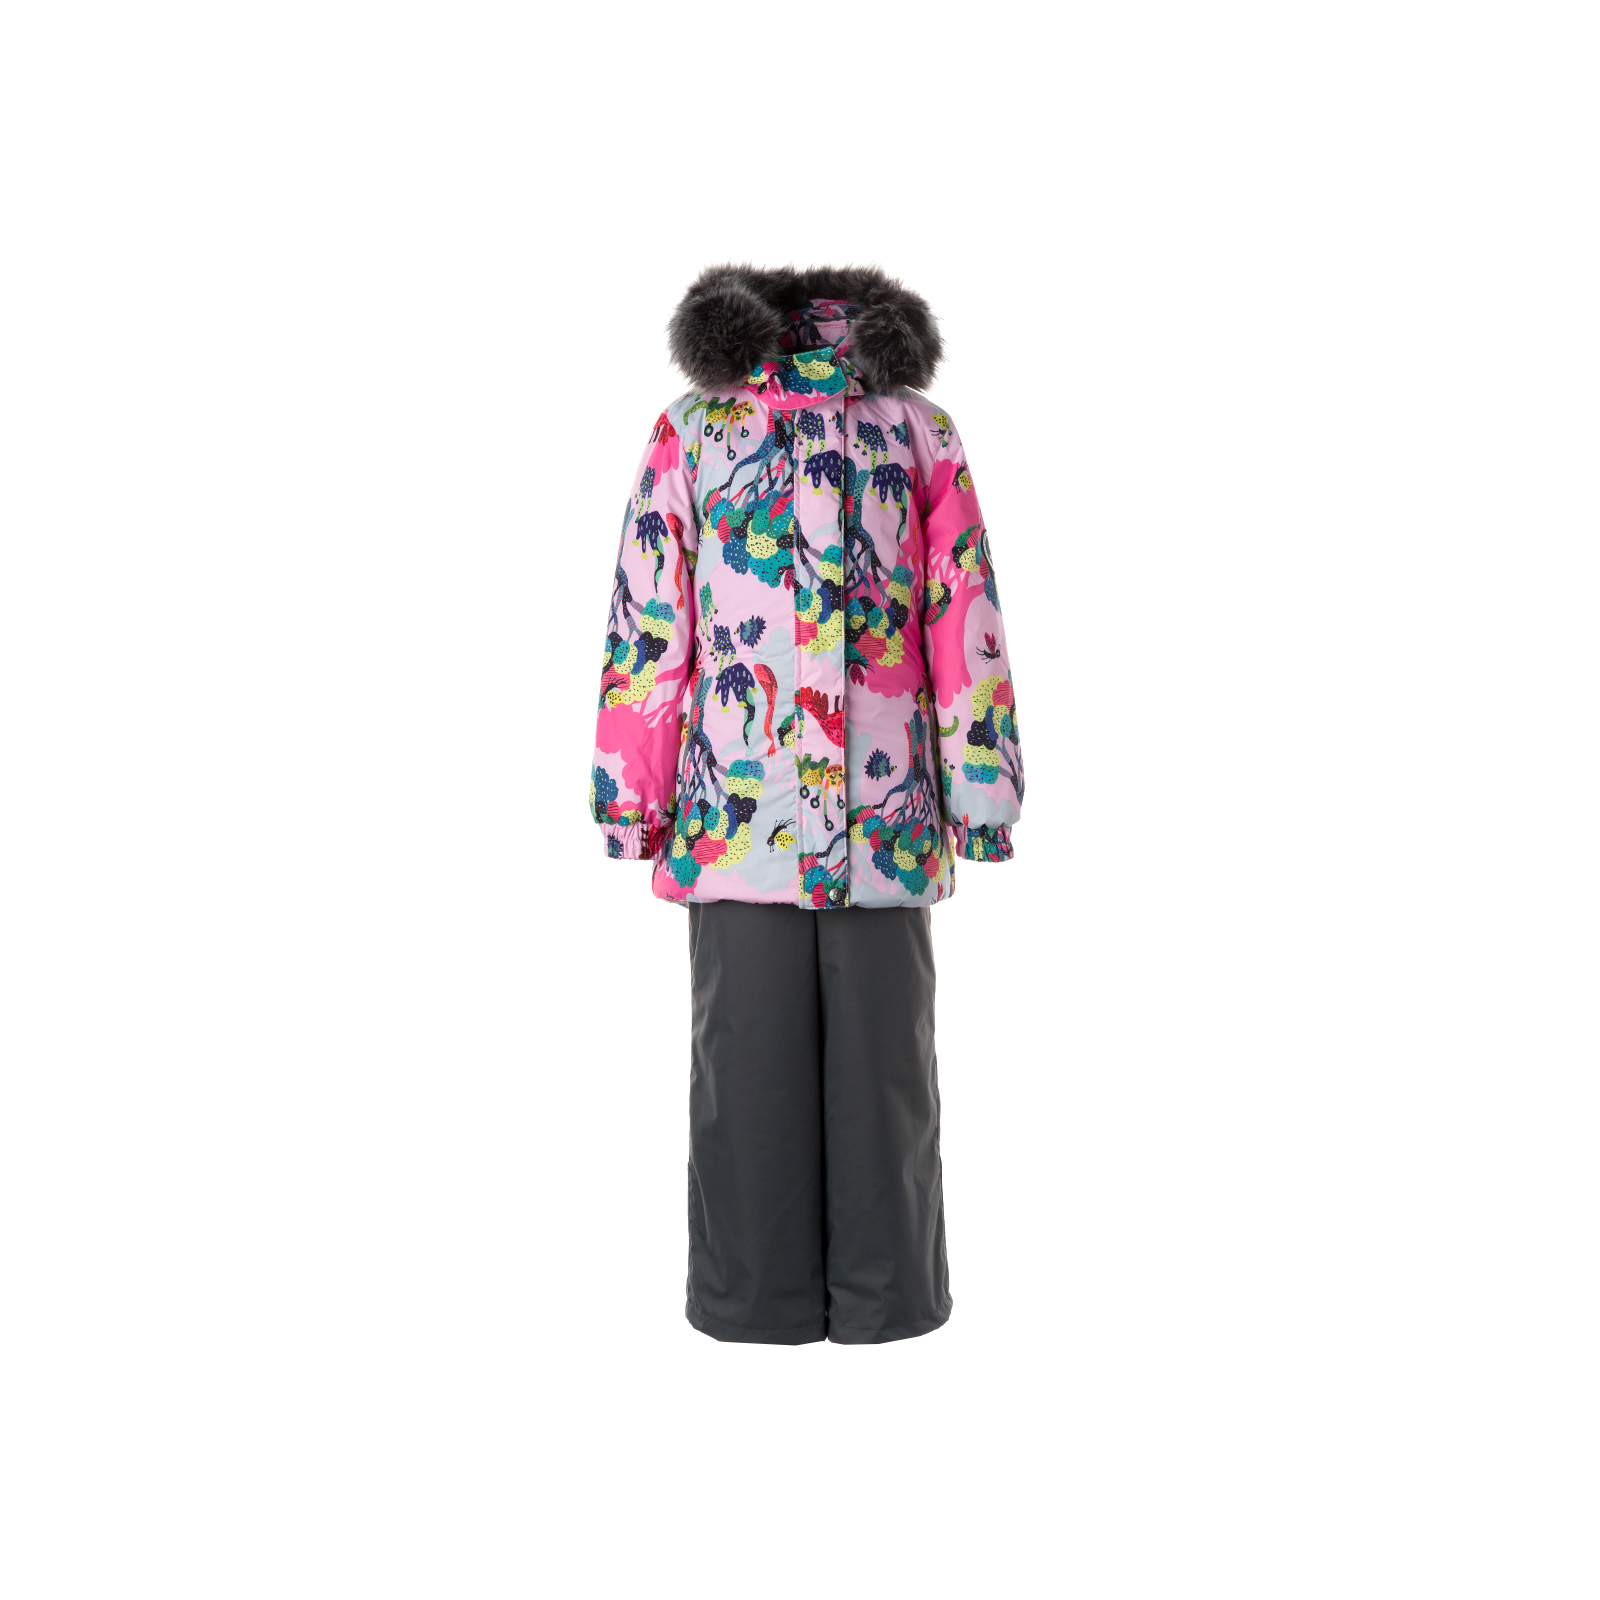 Комплект верхней одежды Huppa RENELY 2 41850230 cветло-розовый с принтом/серый 134 (4741468977799)